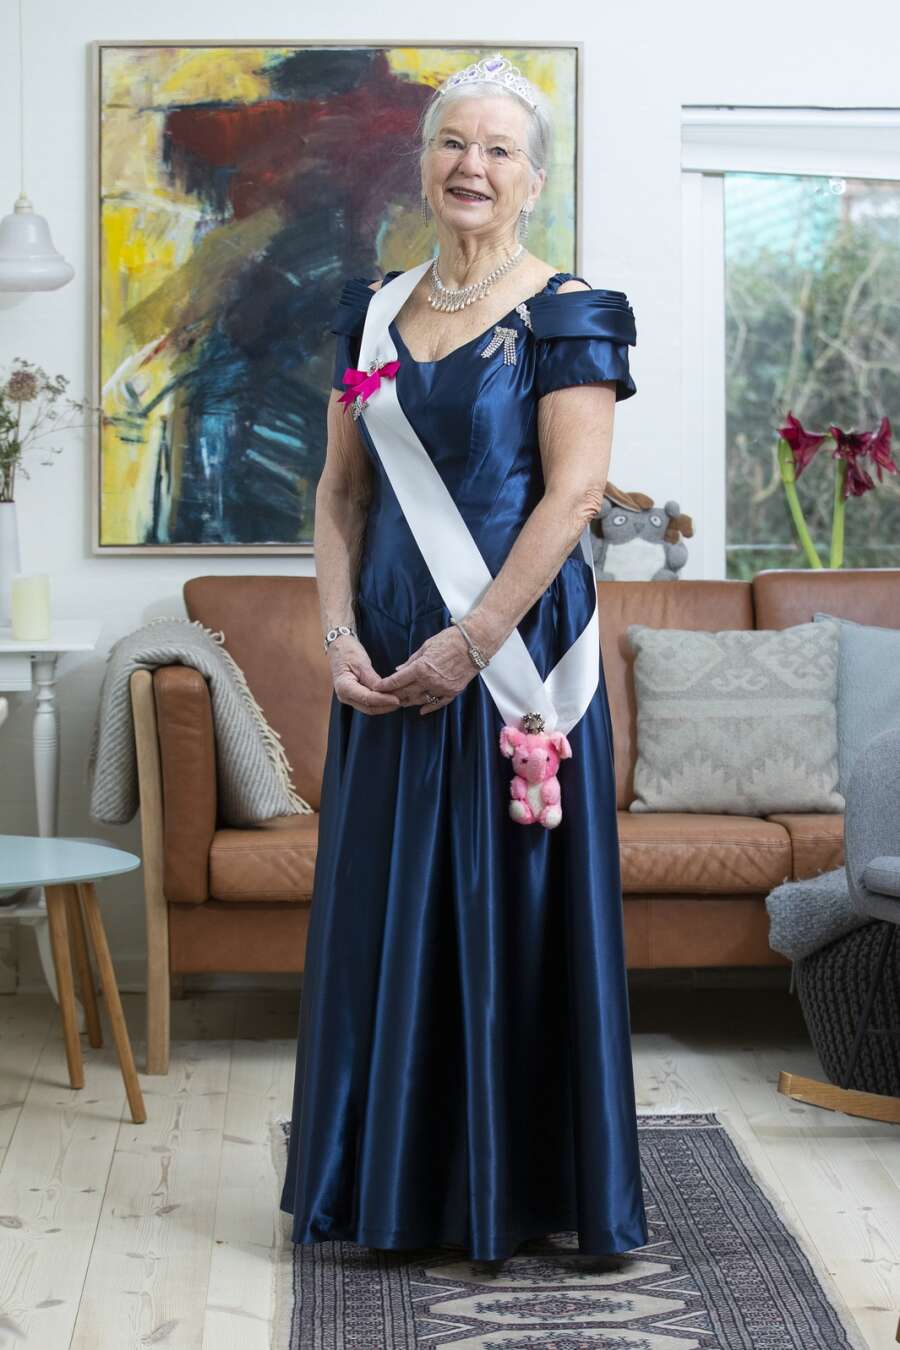 I 33 har Dorte Kolding optrådt som Margrethe: Dronningen kun en kjole og et toneleje væk | Herning Folkeblad